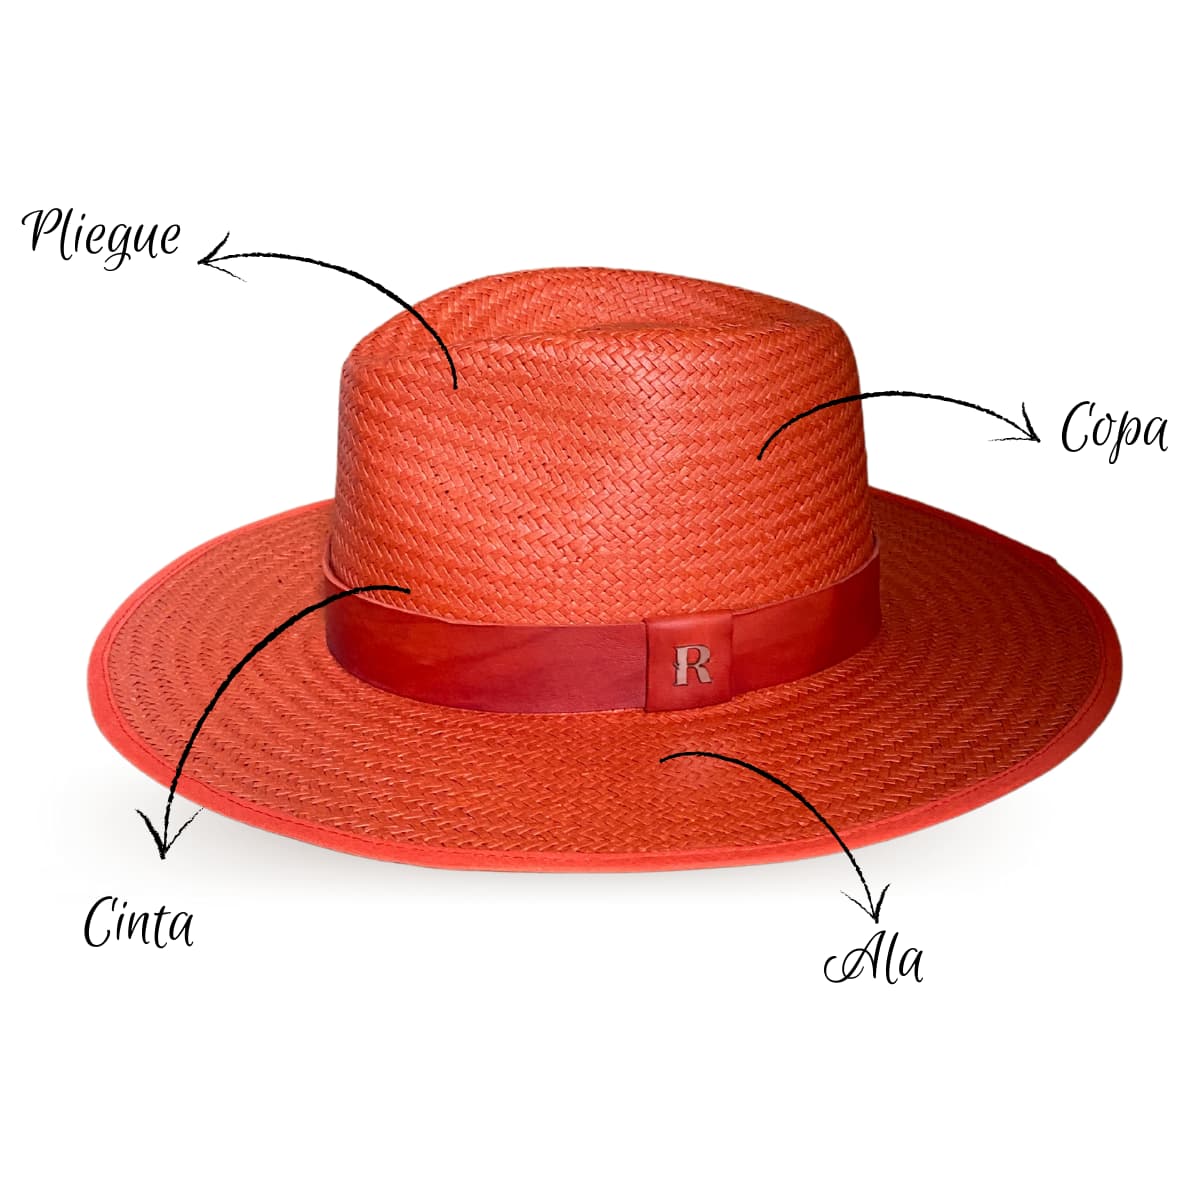 Sombrero de Paja Florida Coral - Estilo Fedora